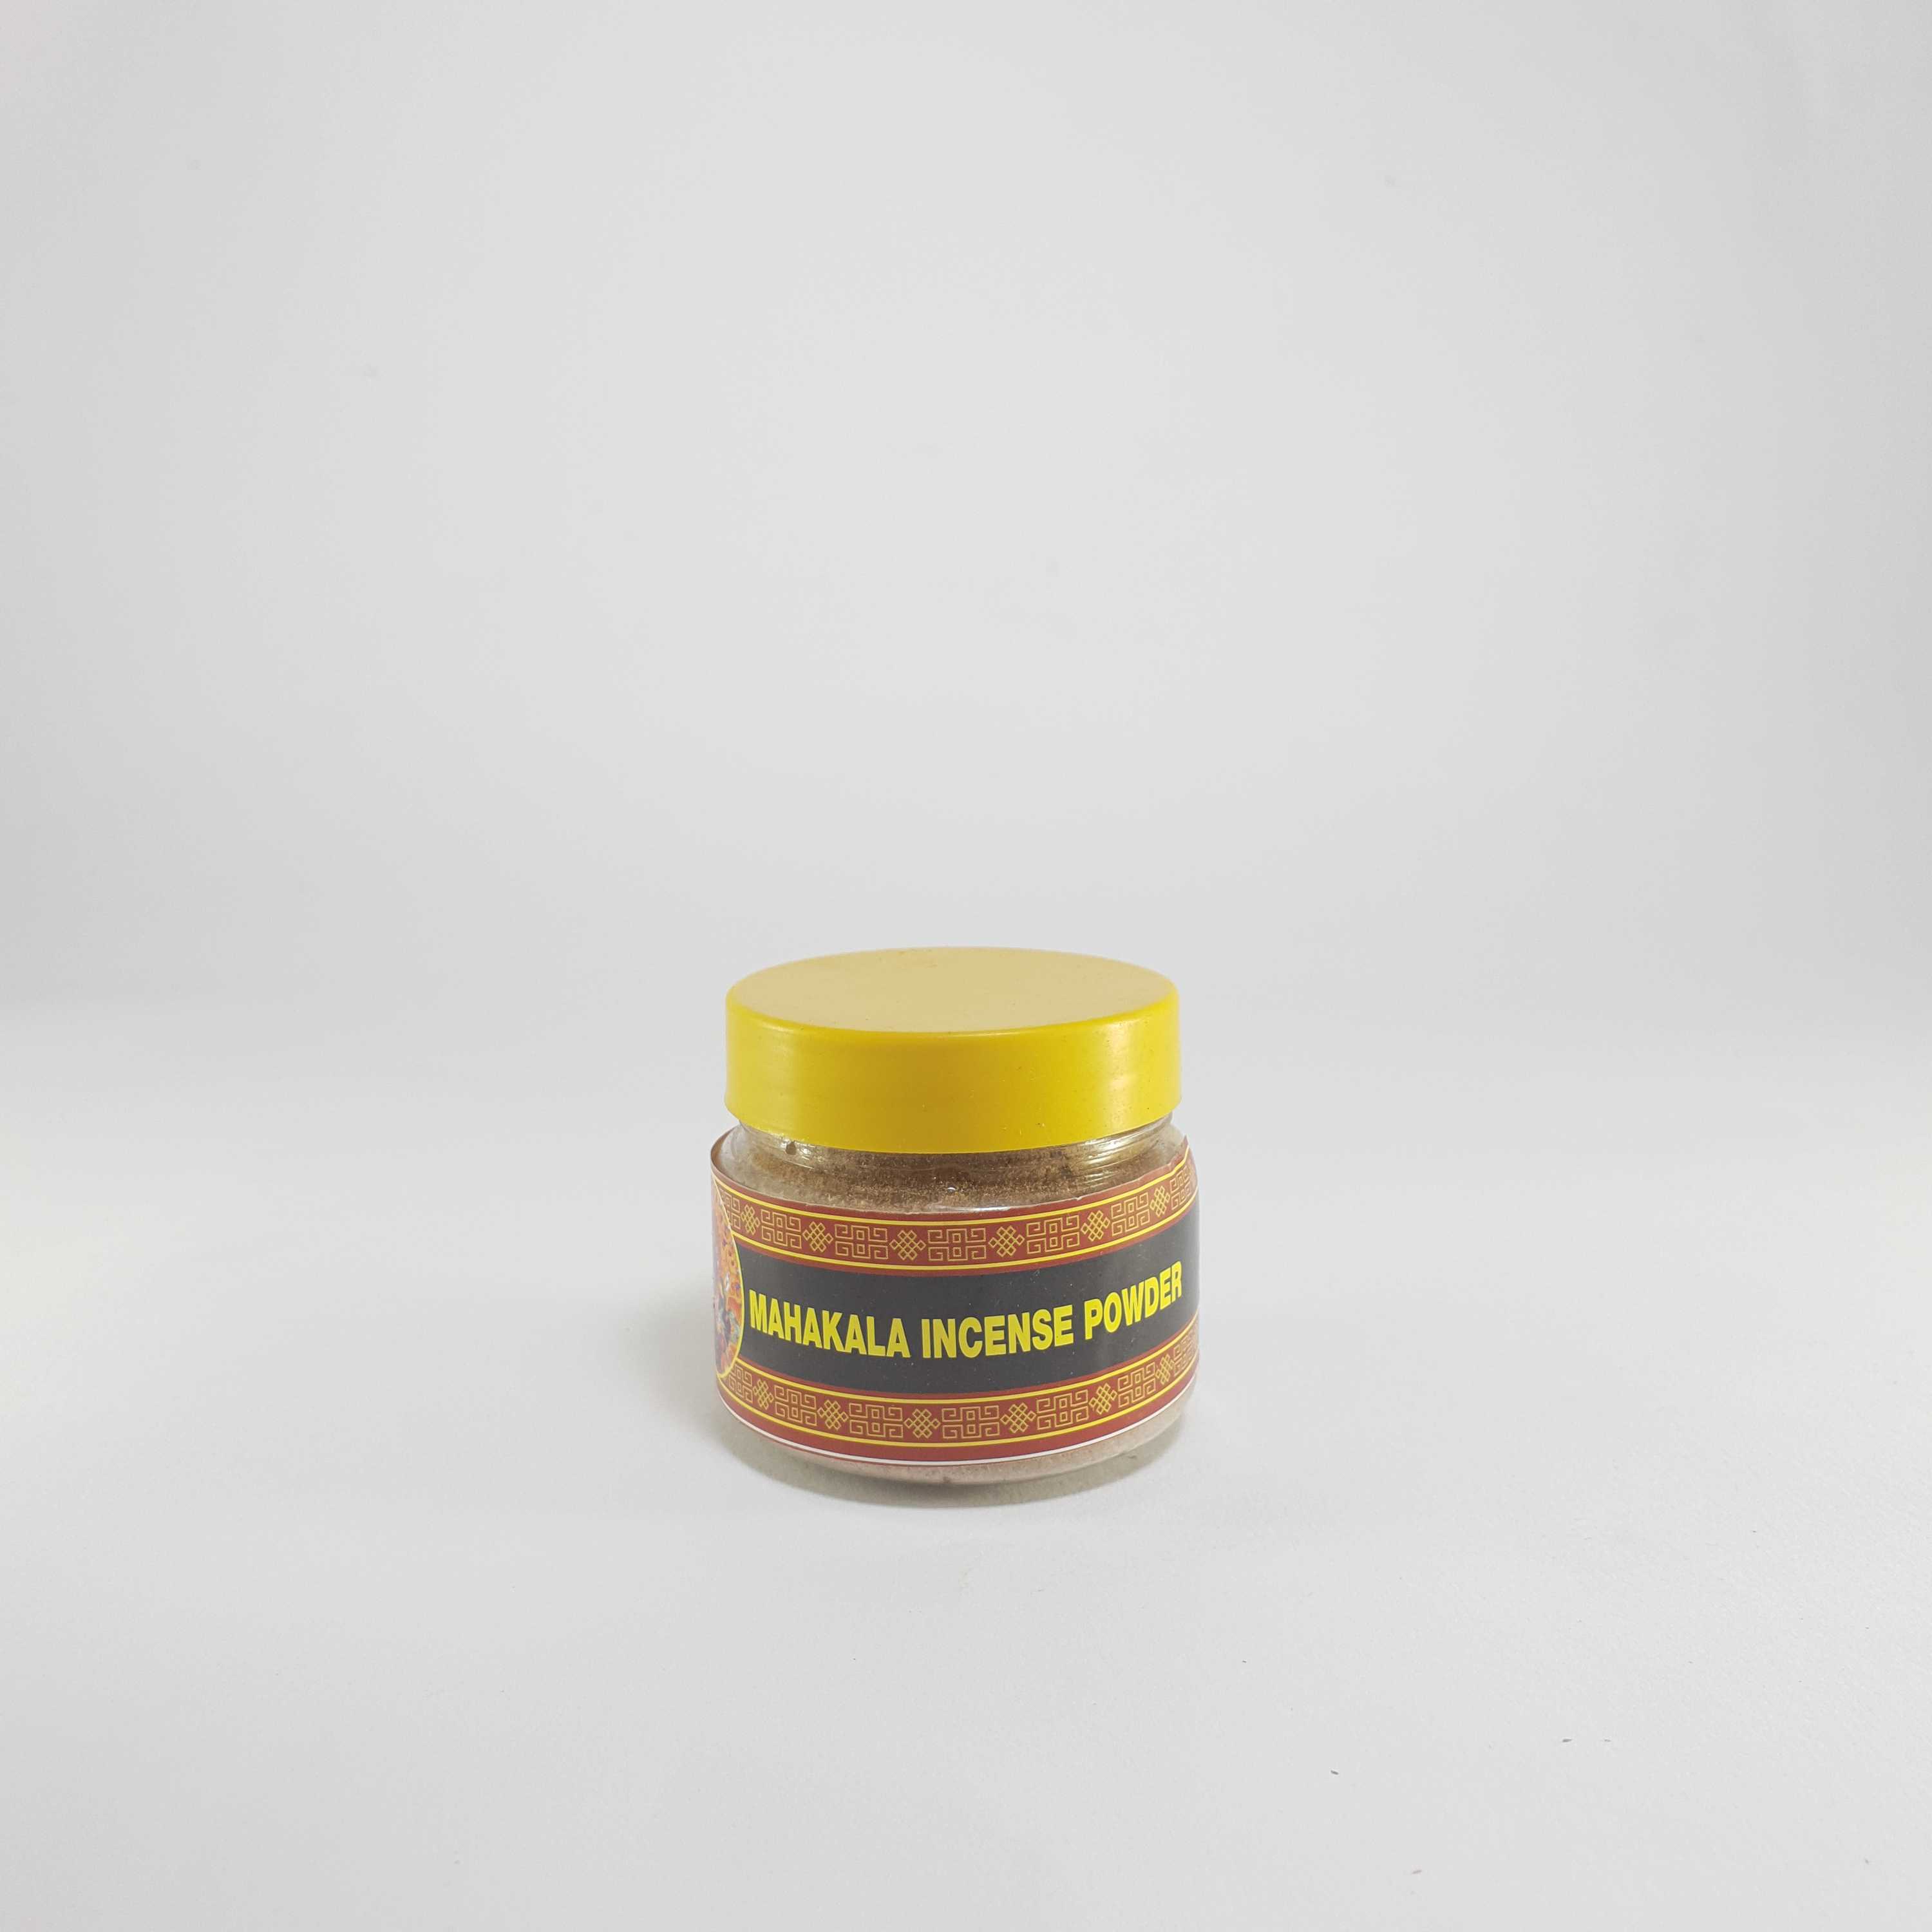 Mahakala Incense Powder, in Pet Jar